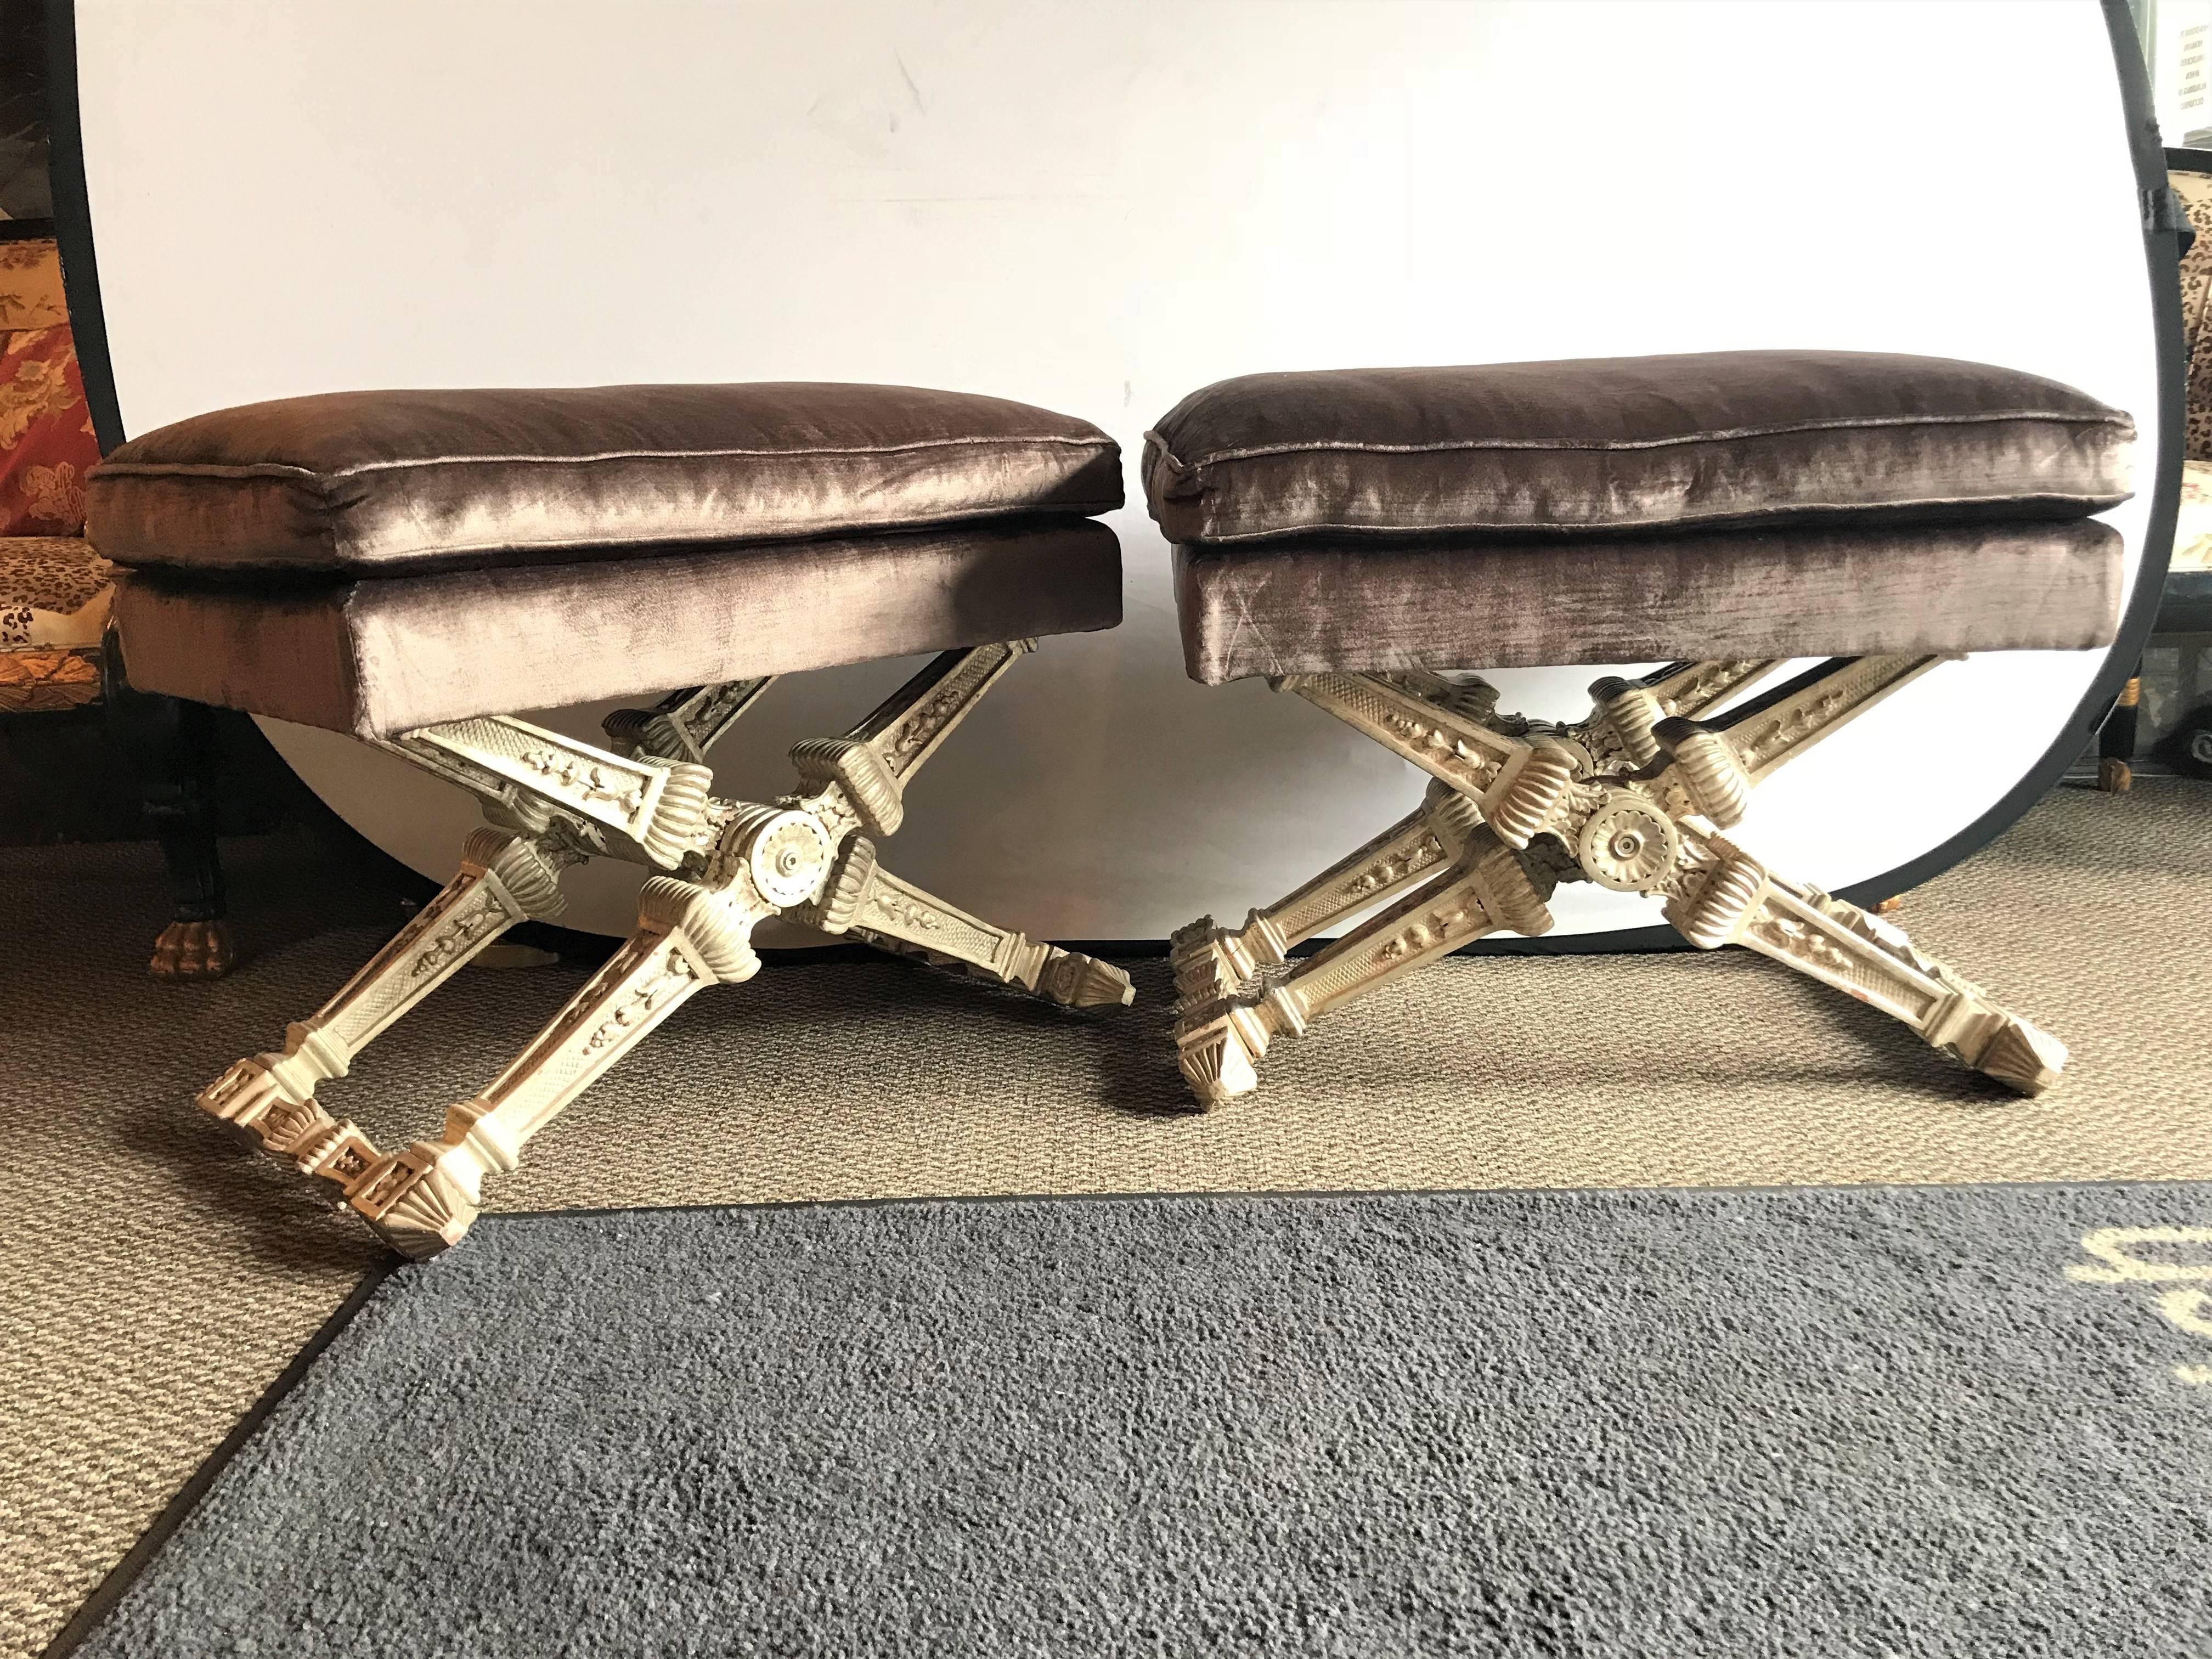 Ein Paar geschnitzte:: silbervergoldete X-förmige Bänke. Jeder hat eine X-Form Basis fein geschnitzt in einem Silber vergoldet Finish mit fein bezogenen Kissen Kissen Sitze.